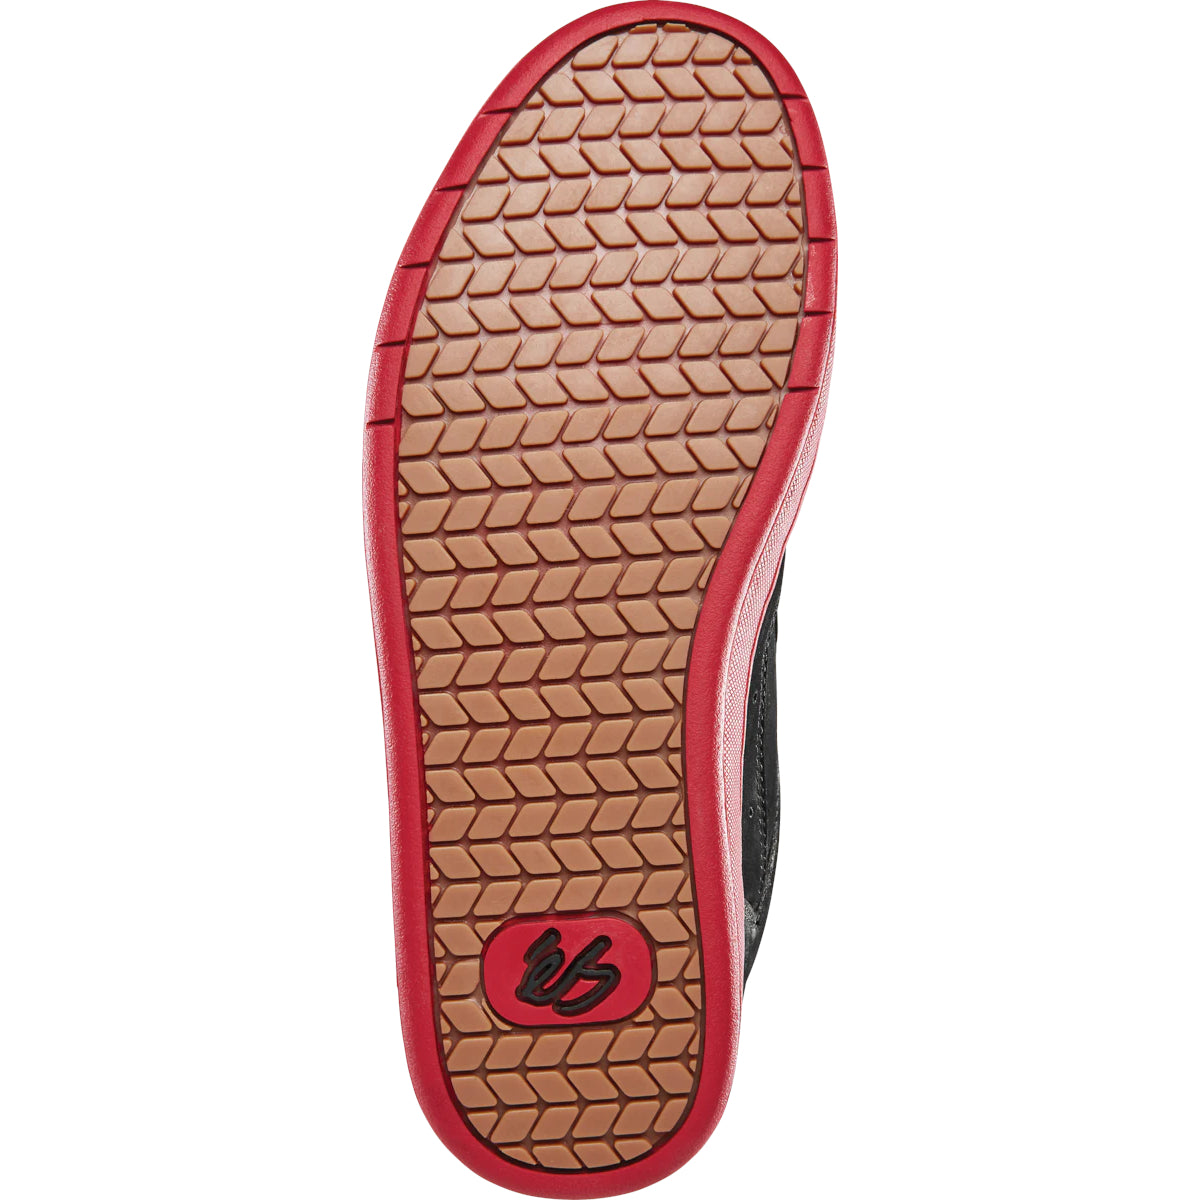 Black/Red TJ Rogers Accel OG Plus eS Skateboard Shoe Bottom